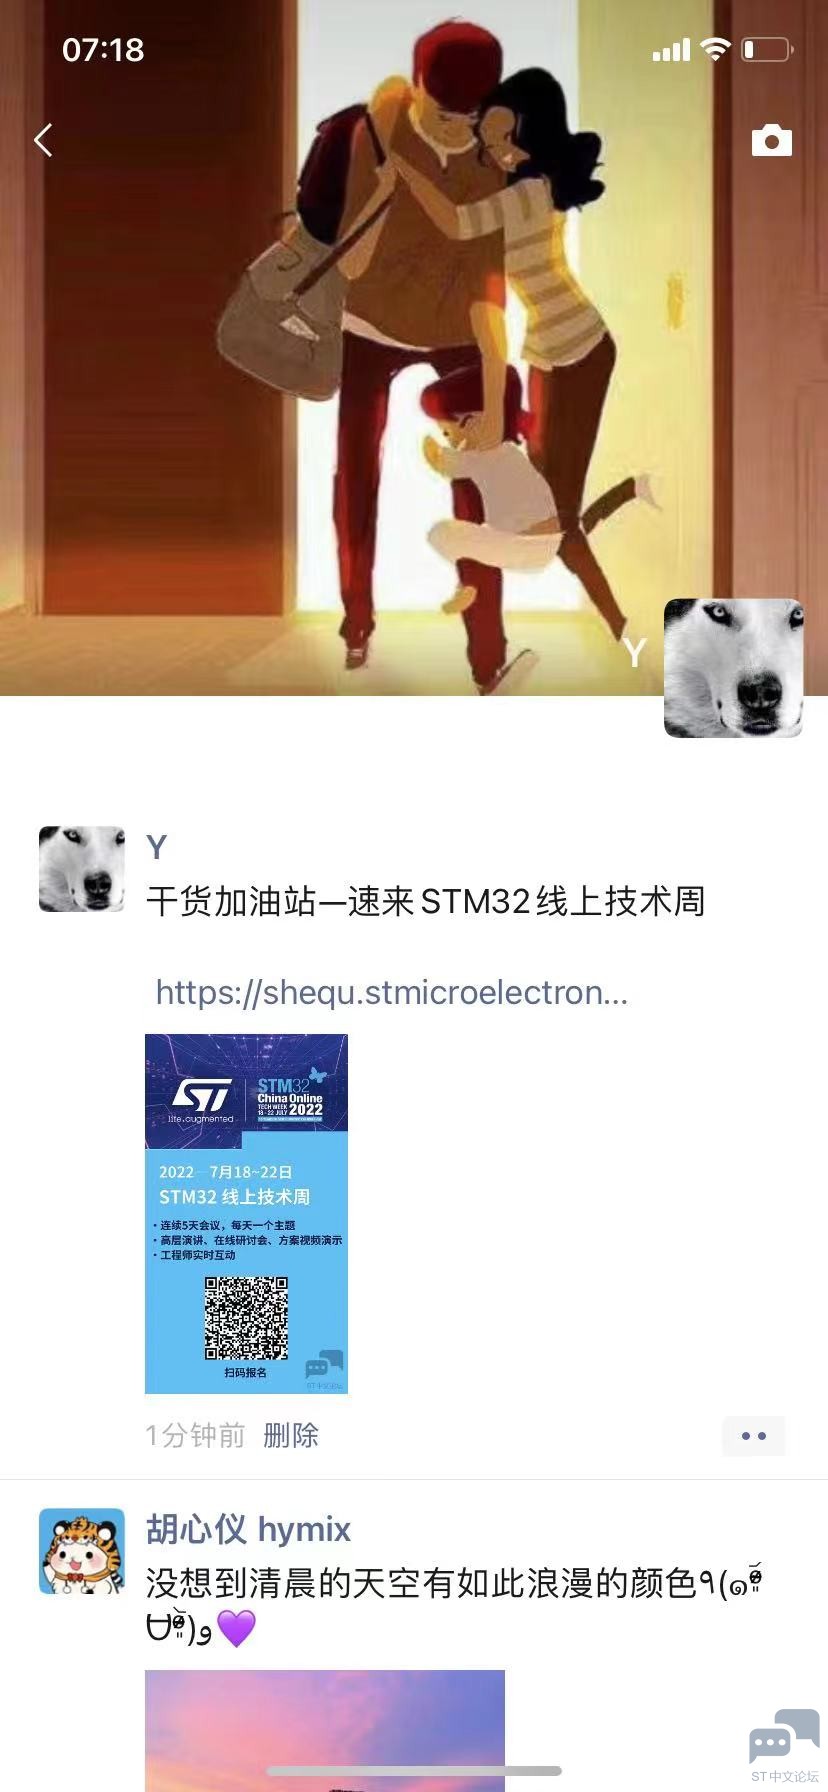 WeChat Image_20220630072048.jpg